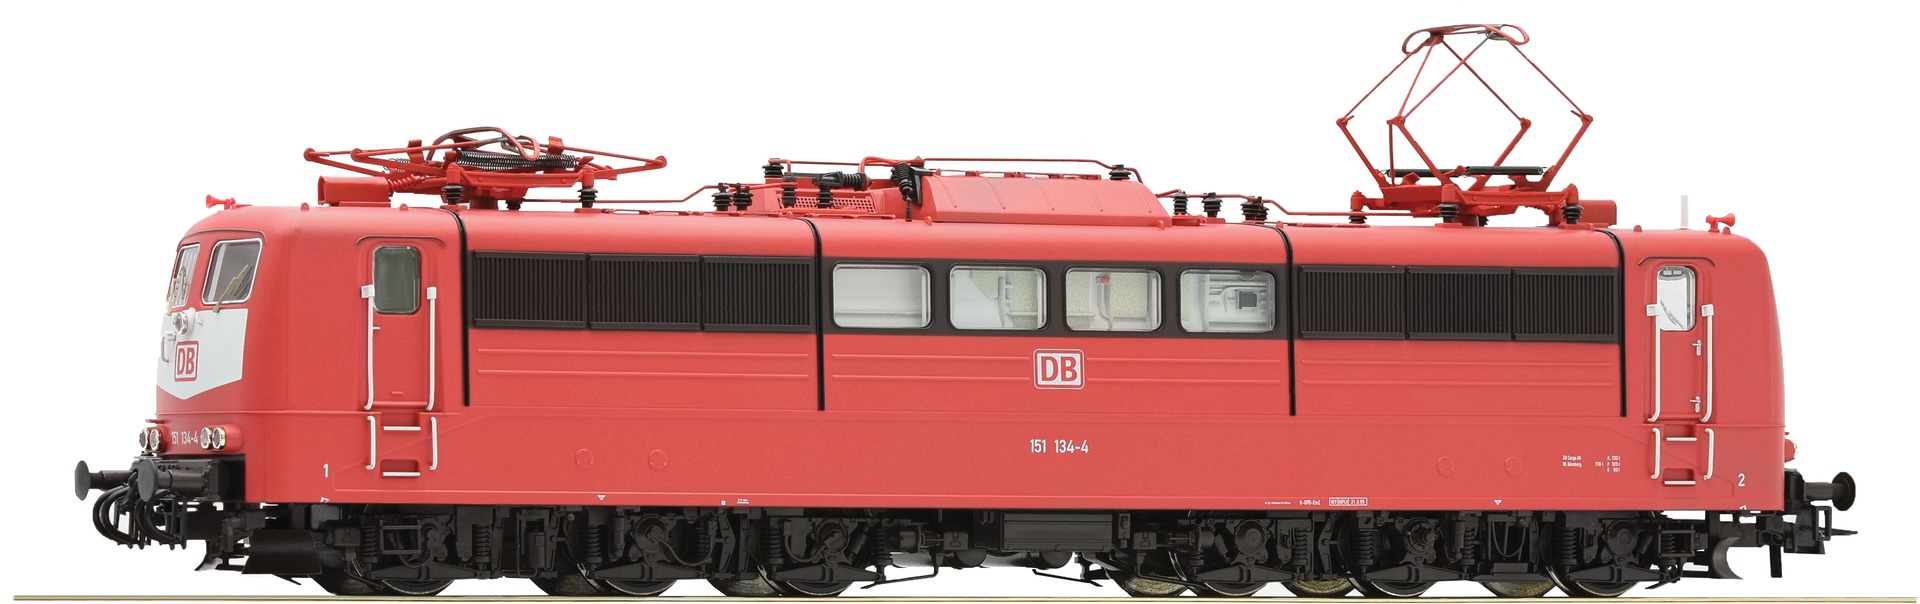 Roco Electric locomotive BR 151